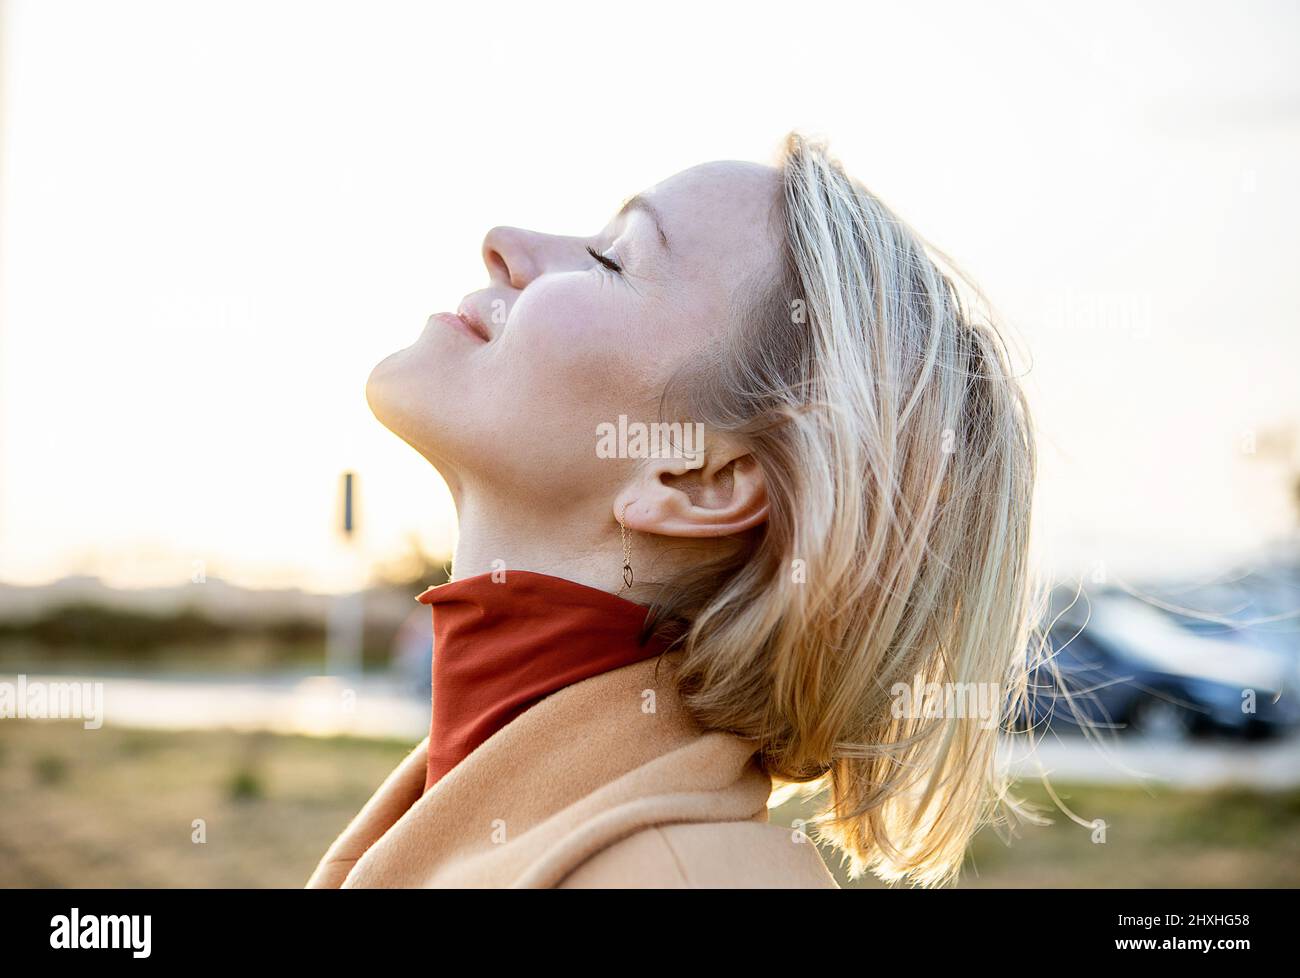 Femme blonde moyenne adulte respirant de l'air frais dans la campagne Banque D'Images